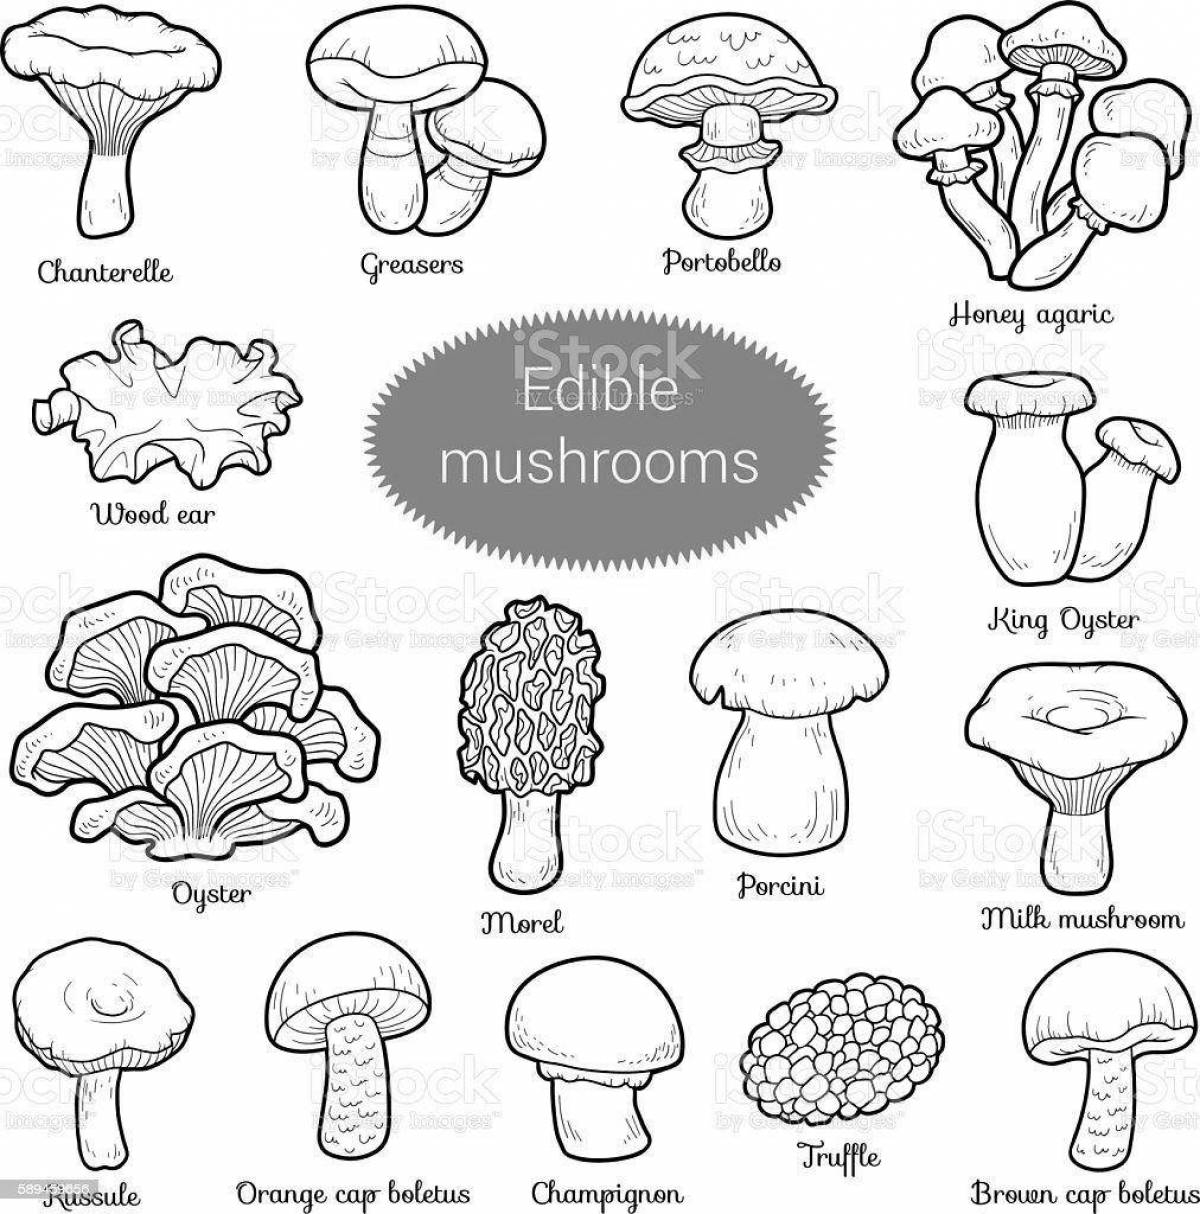 Luminous non-edible mushrooms